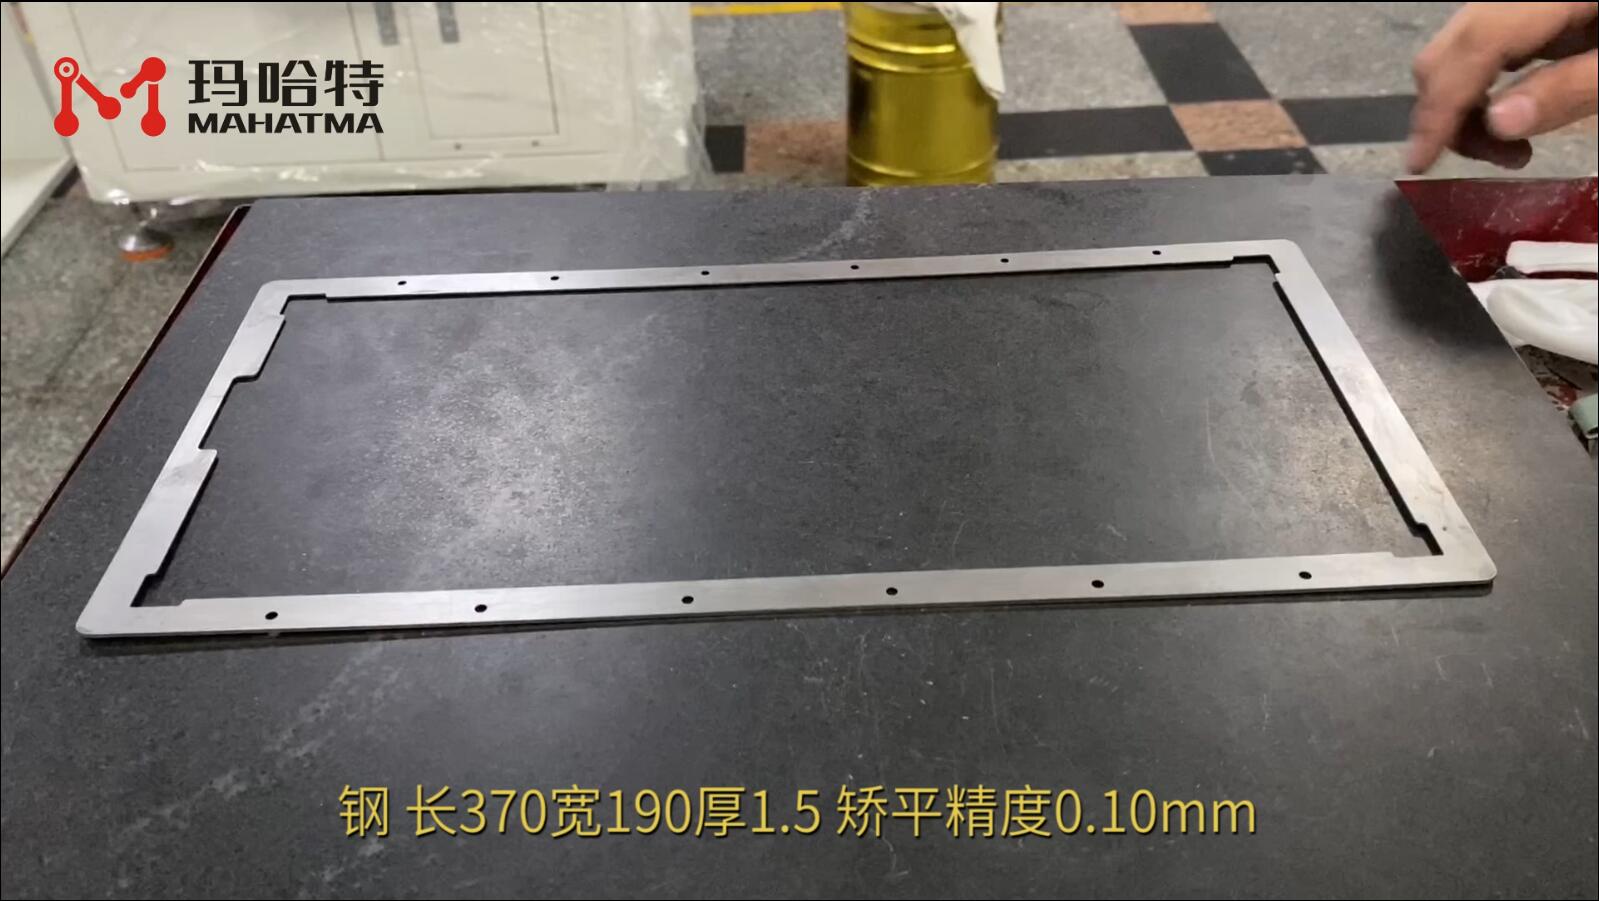 钢 MHT30-400 长方形 长370宽190厚1.5 矫平精度0.10mm